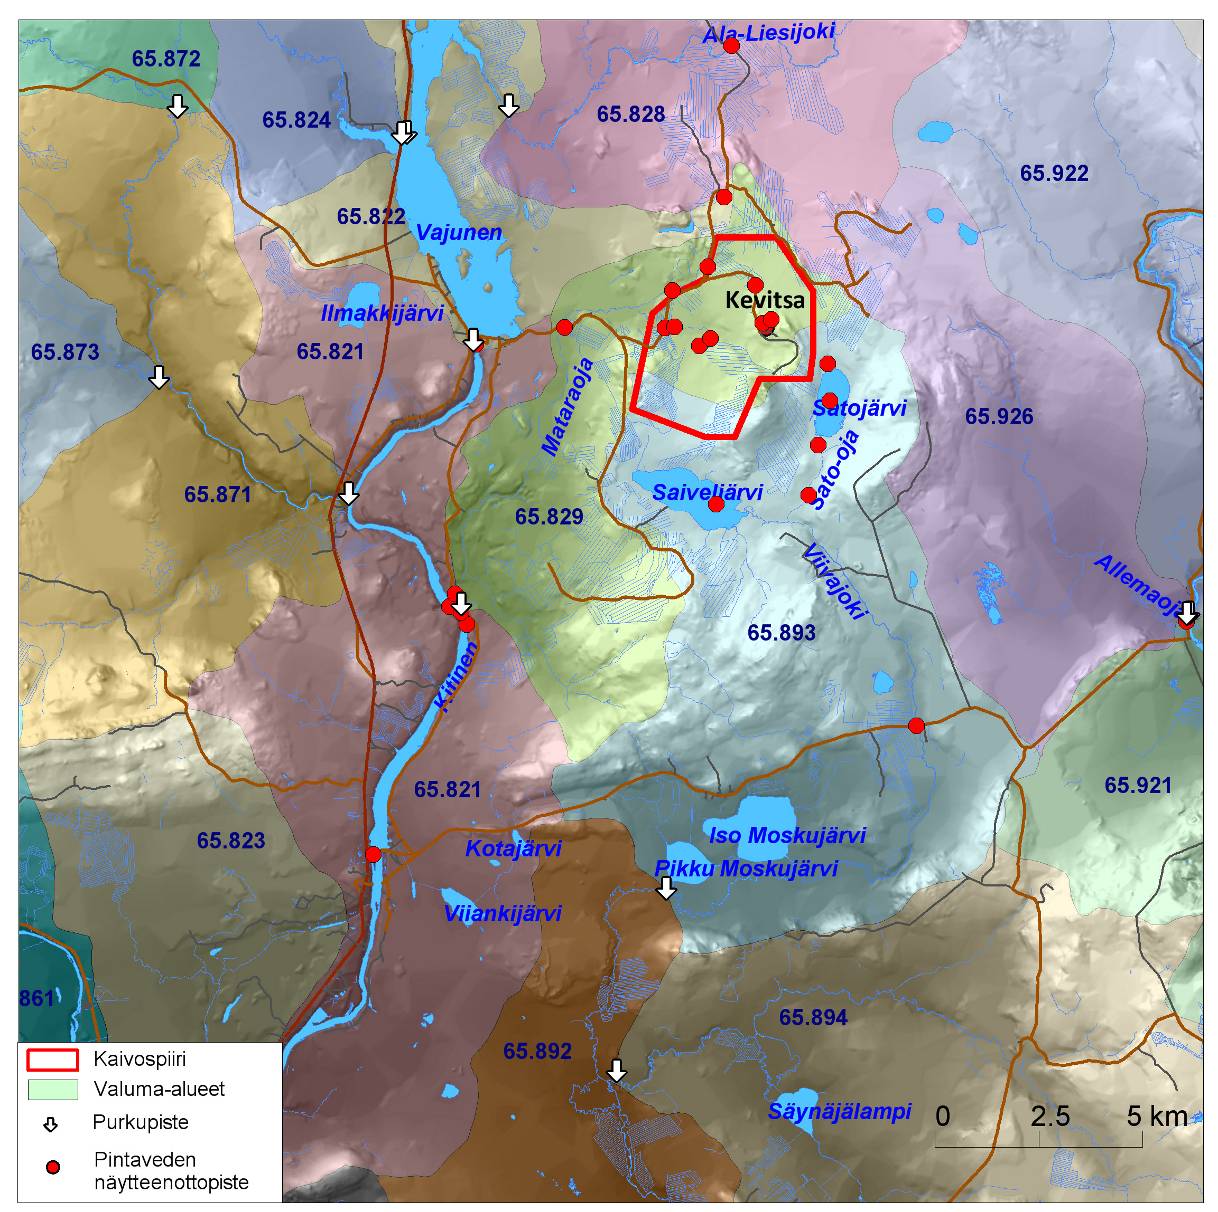 75(157) Allemaoja saa alkunsa Allema-aavan suoalueelta noin 5 km Kevitsan alueelta itään. Ojan valuma-alue on noin 59,6 km 2 koostuen pääsoin ojittamattomasta aapasuosta.